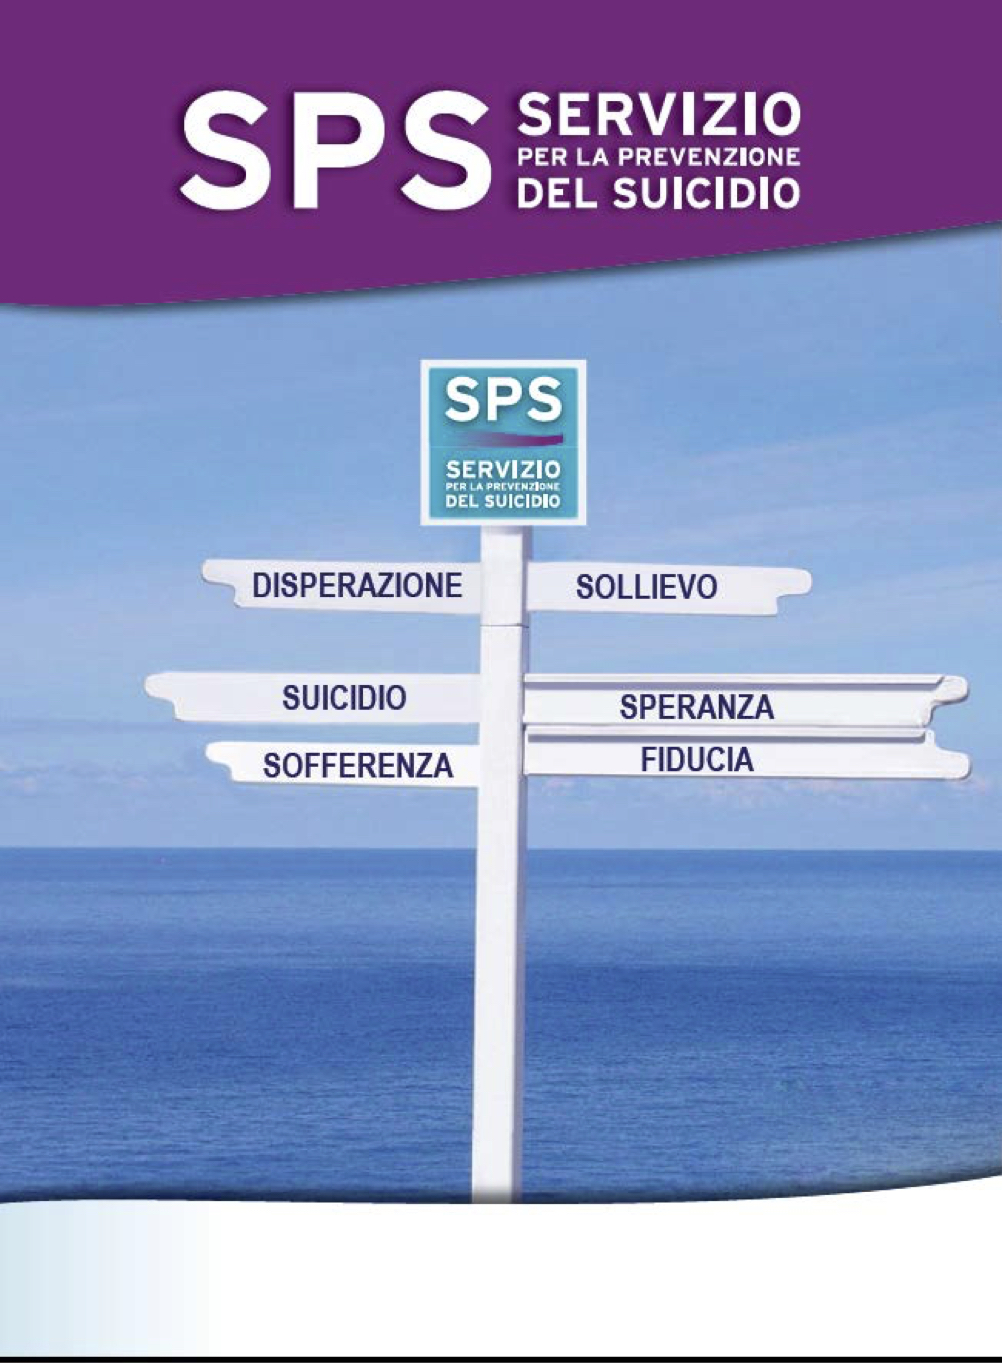 Un Servizio a sostegno della vita-Servizio Prevenzione del Suicidio